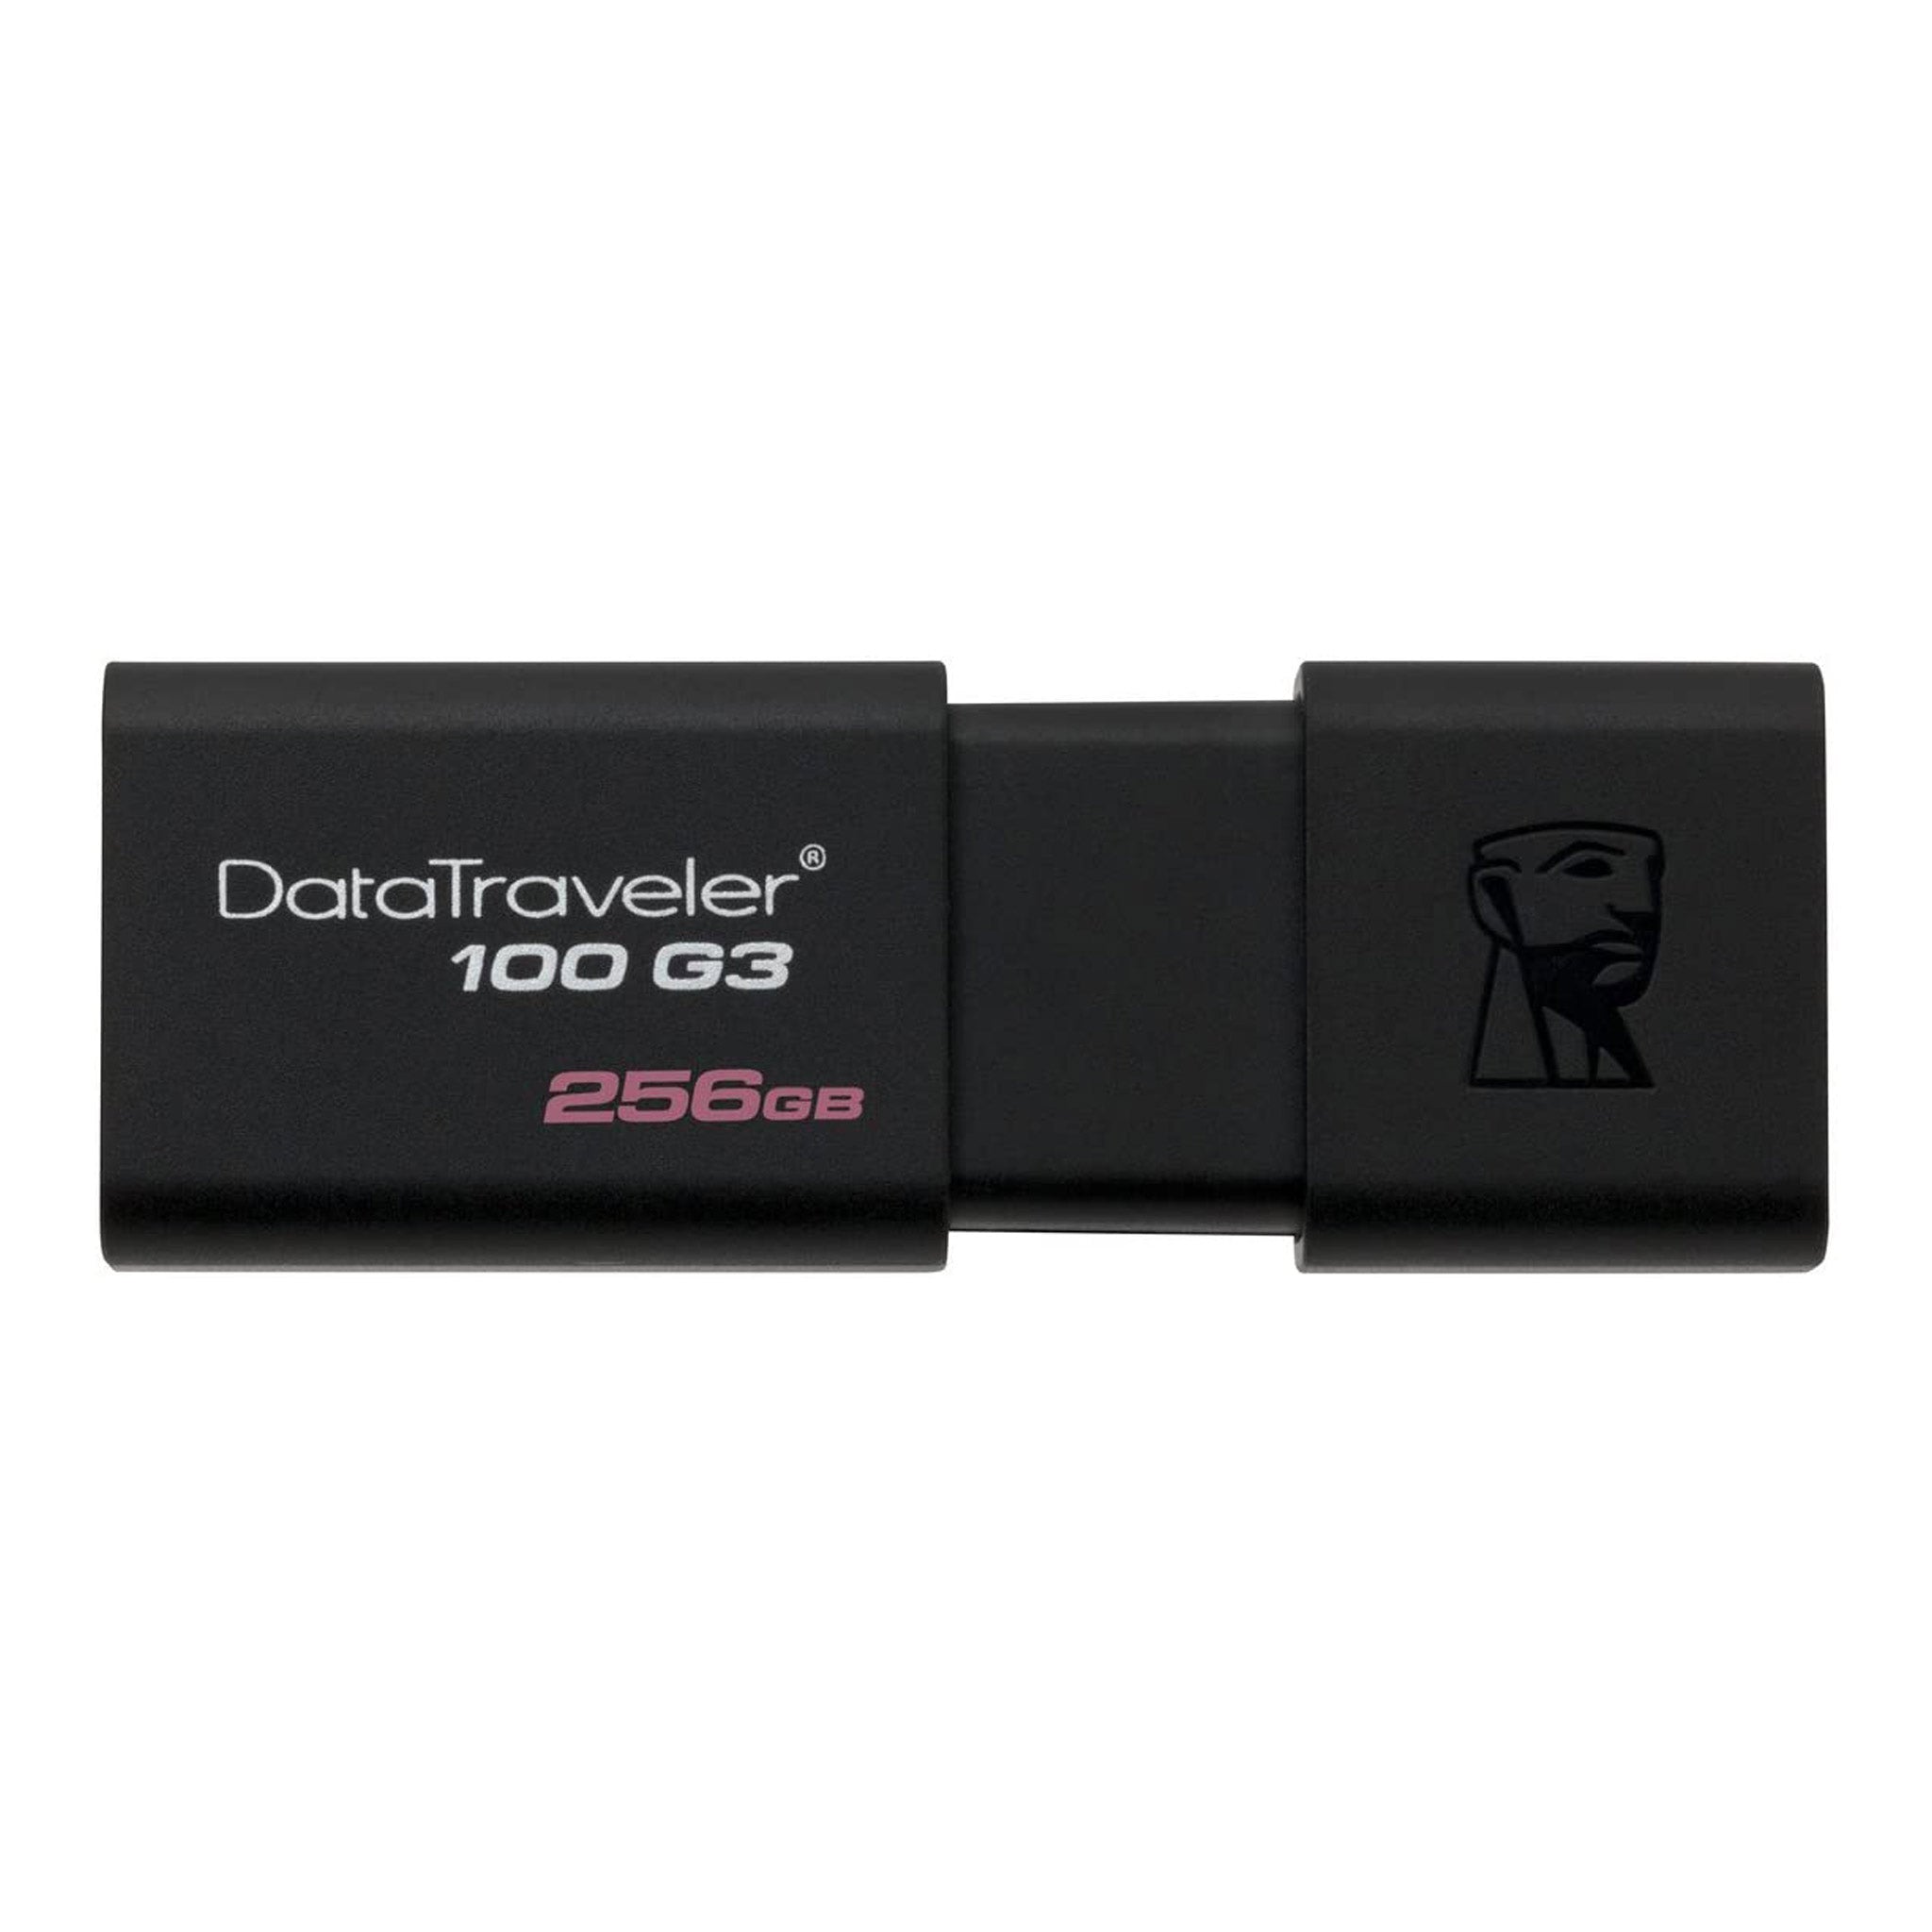 DataTraveler G3 256GB USB Flash Drive